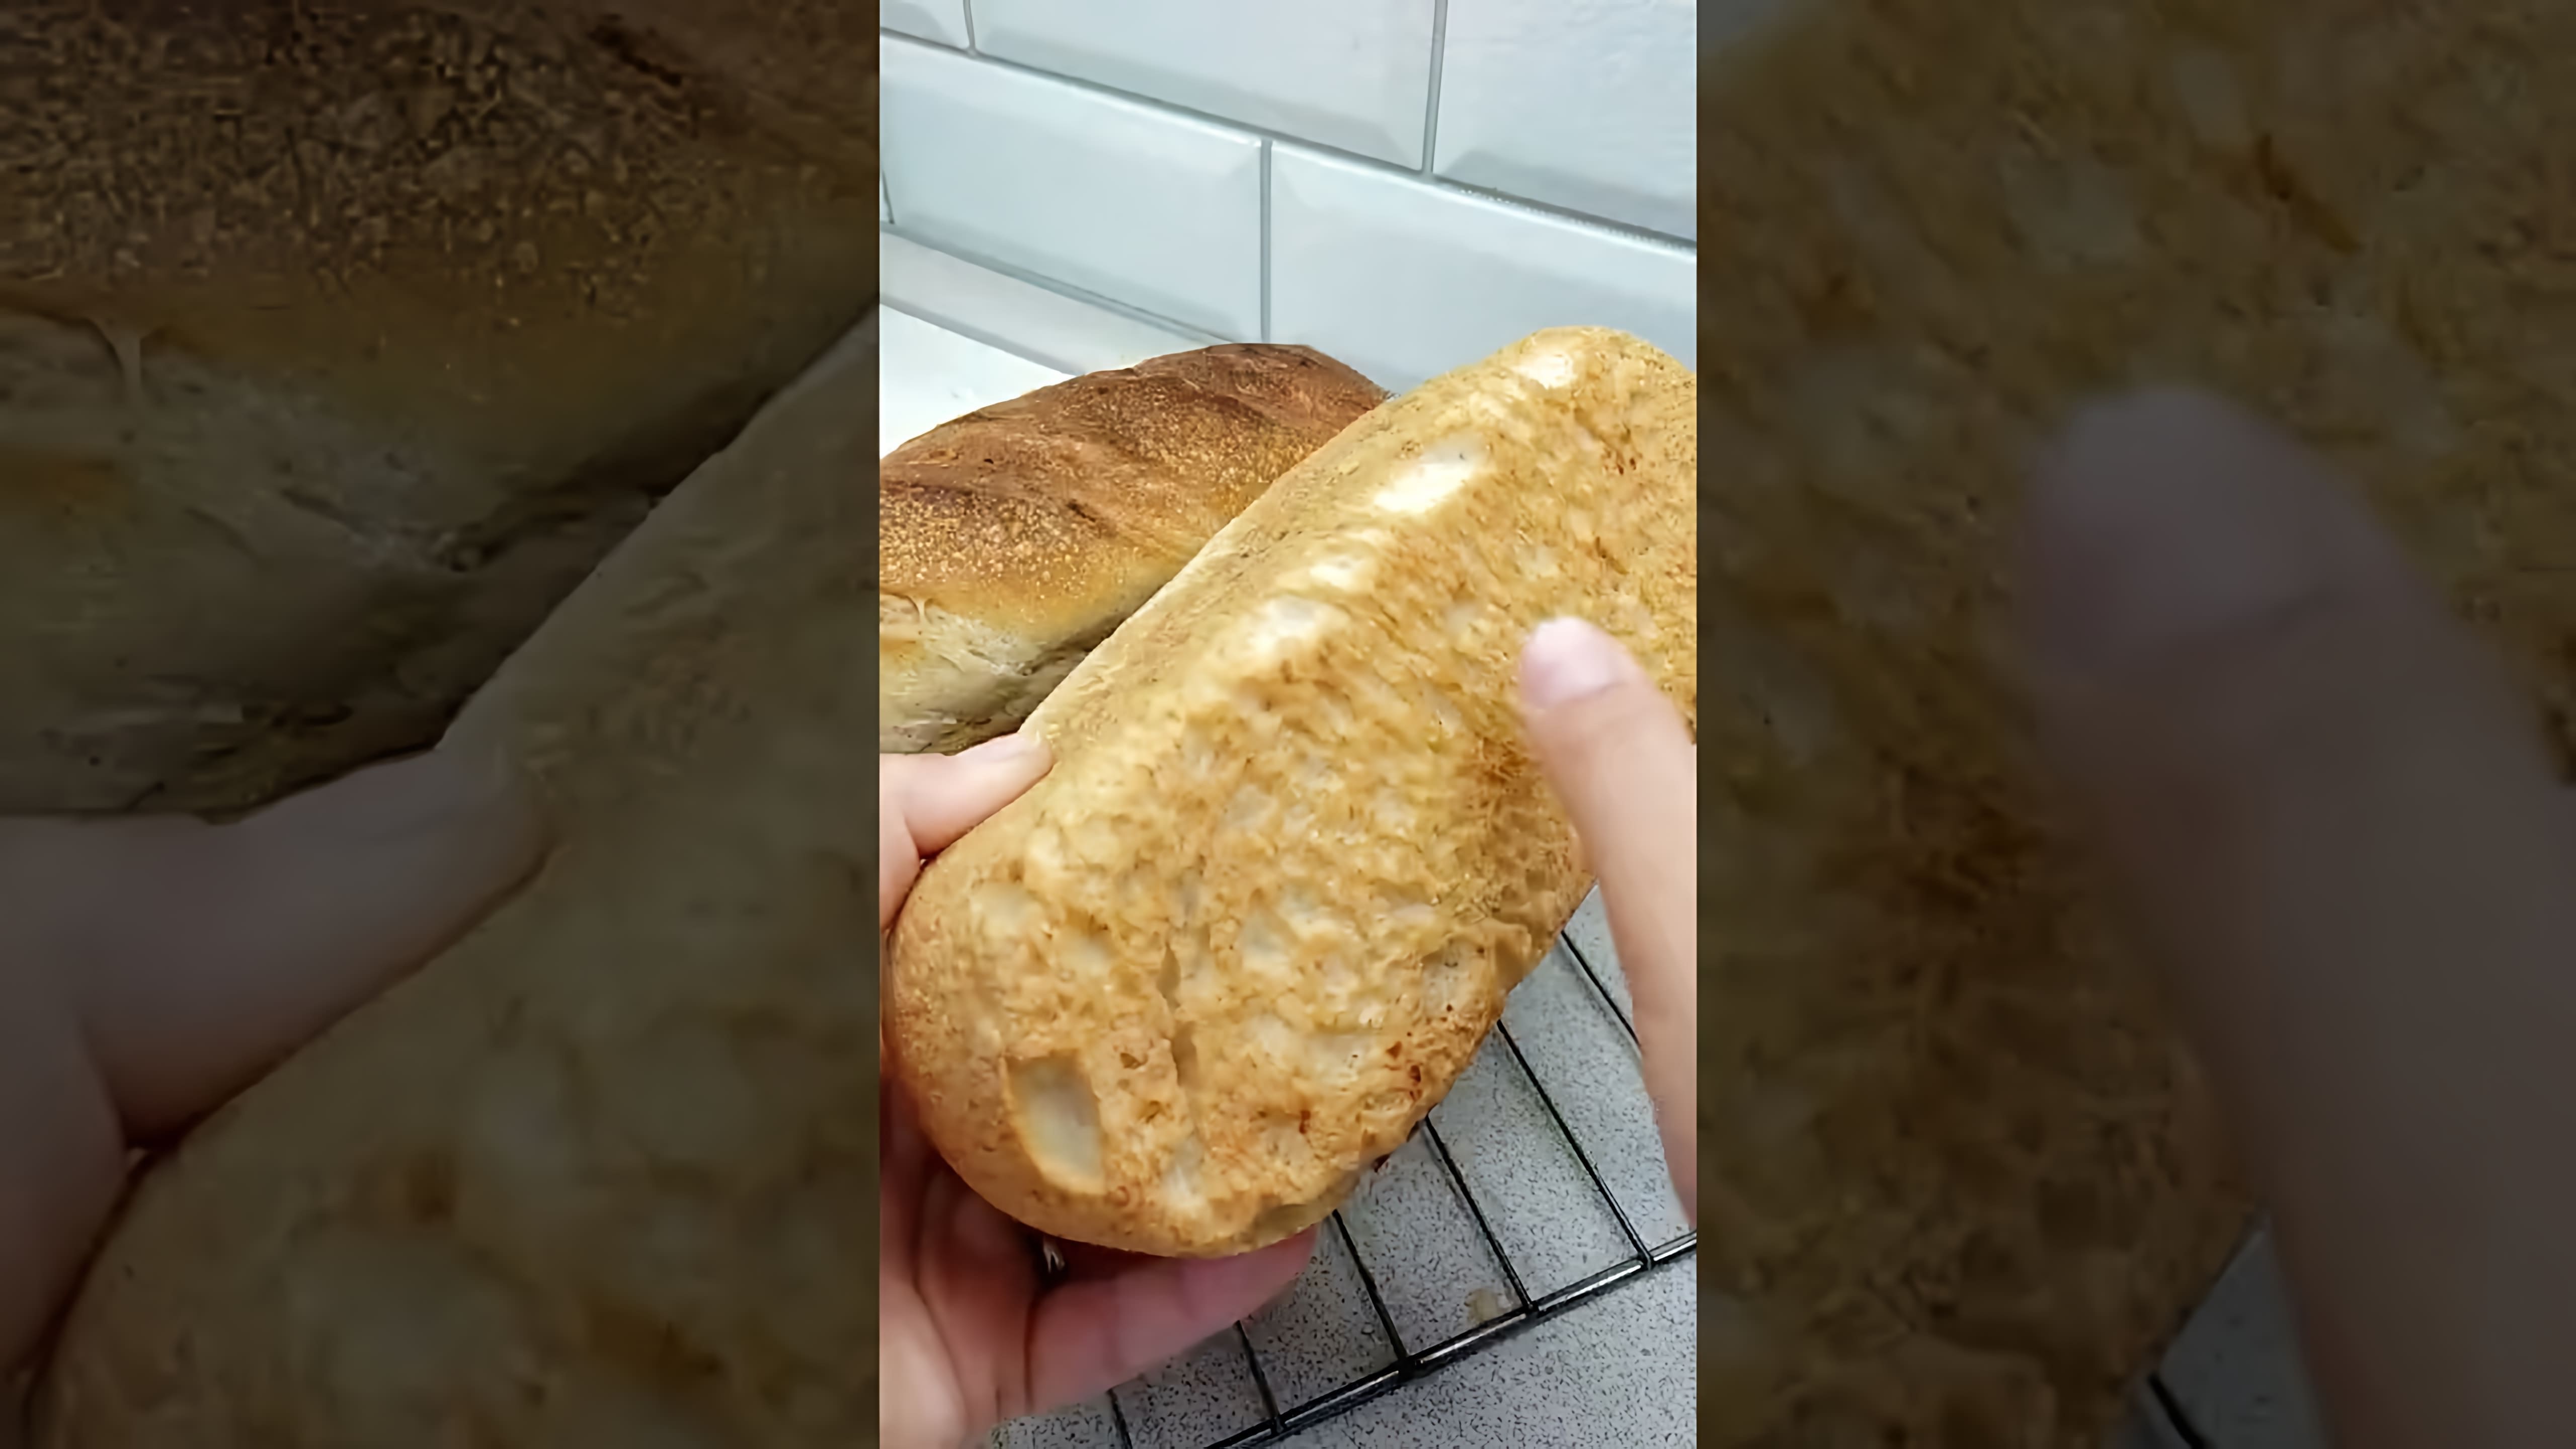 Домашний бездрожжевой хлеб - это просто и вкусно! В этом видео-ролике вы увидите, как приготовить настоящий домашний хлеб без использования дрожжей